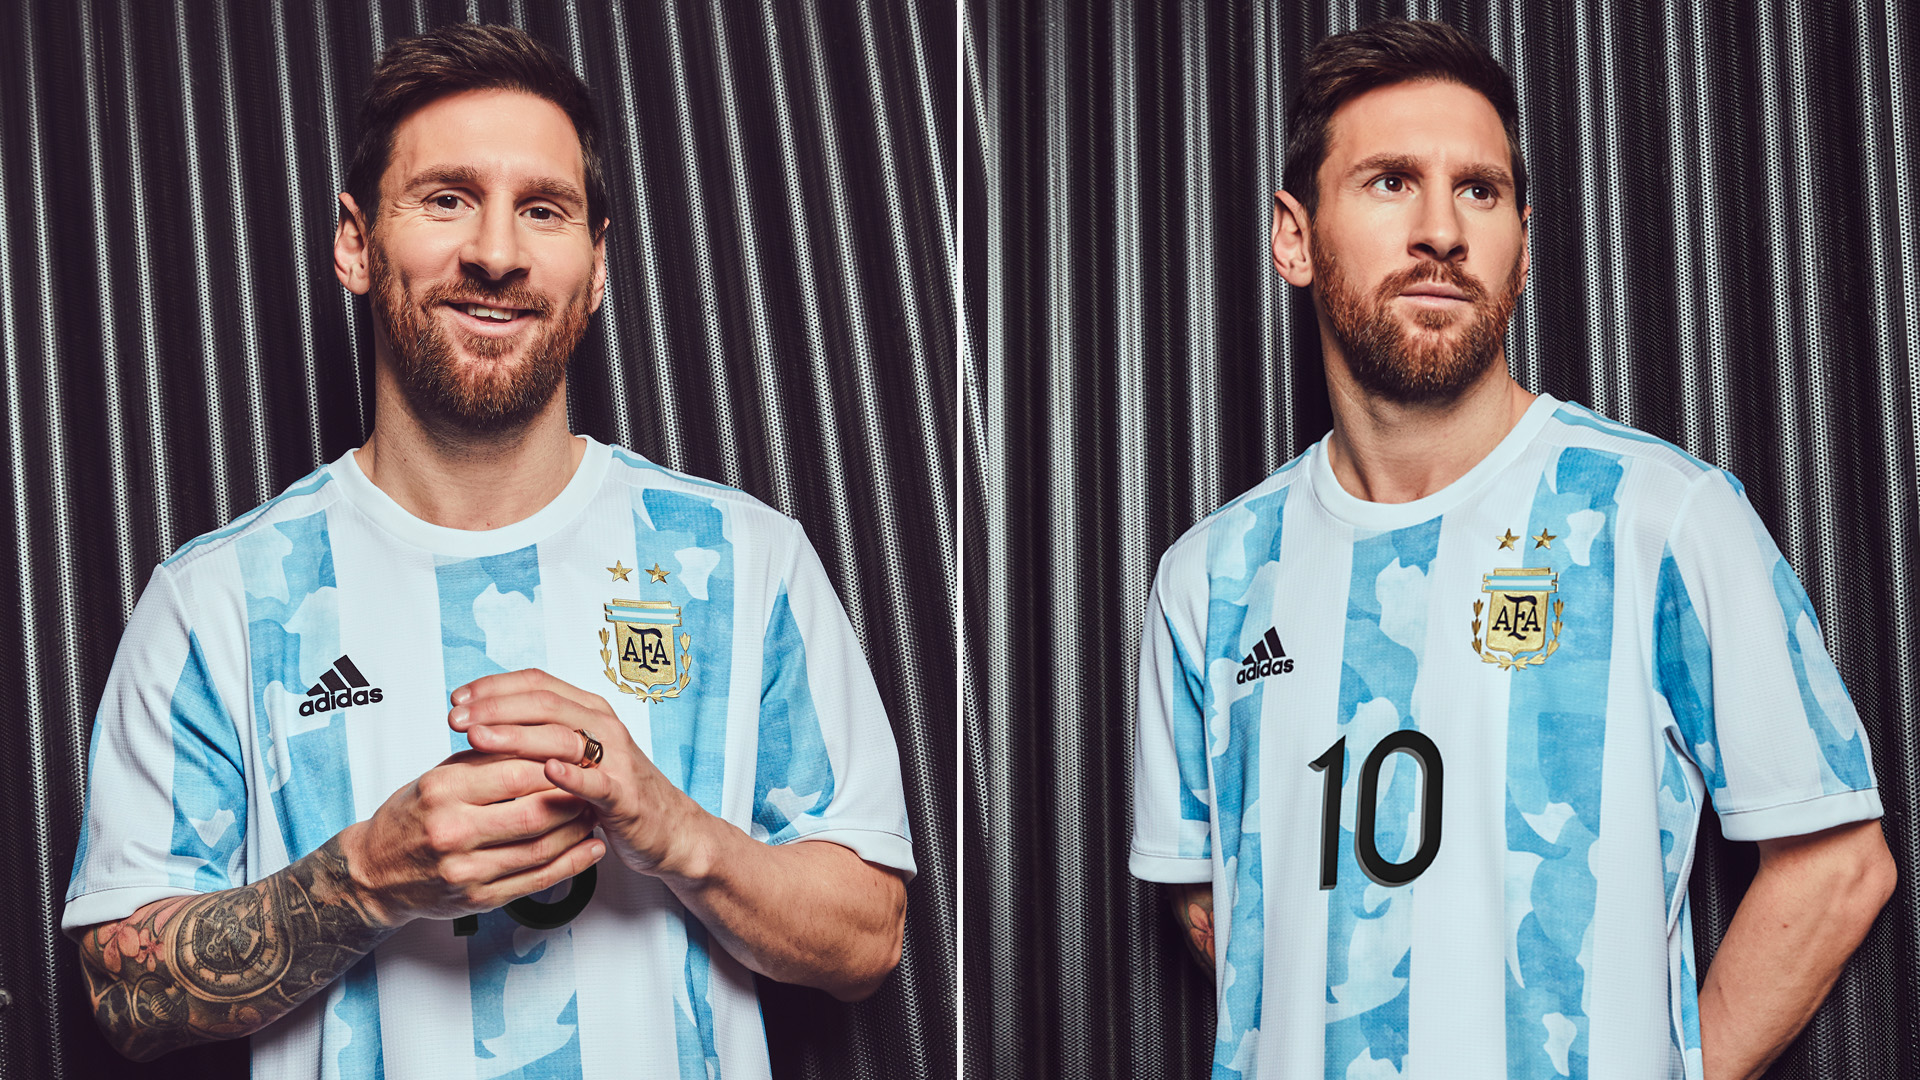 Camiseta Messi Argentina